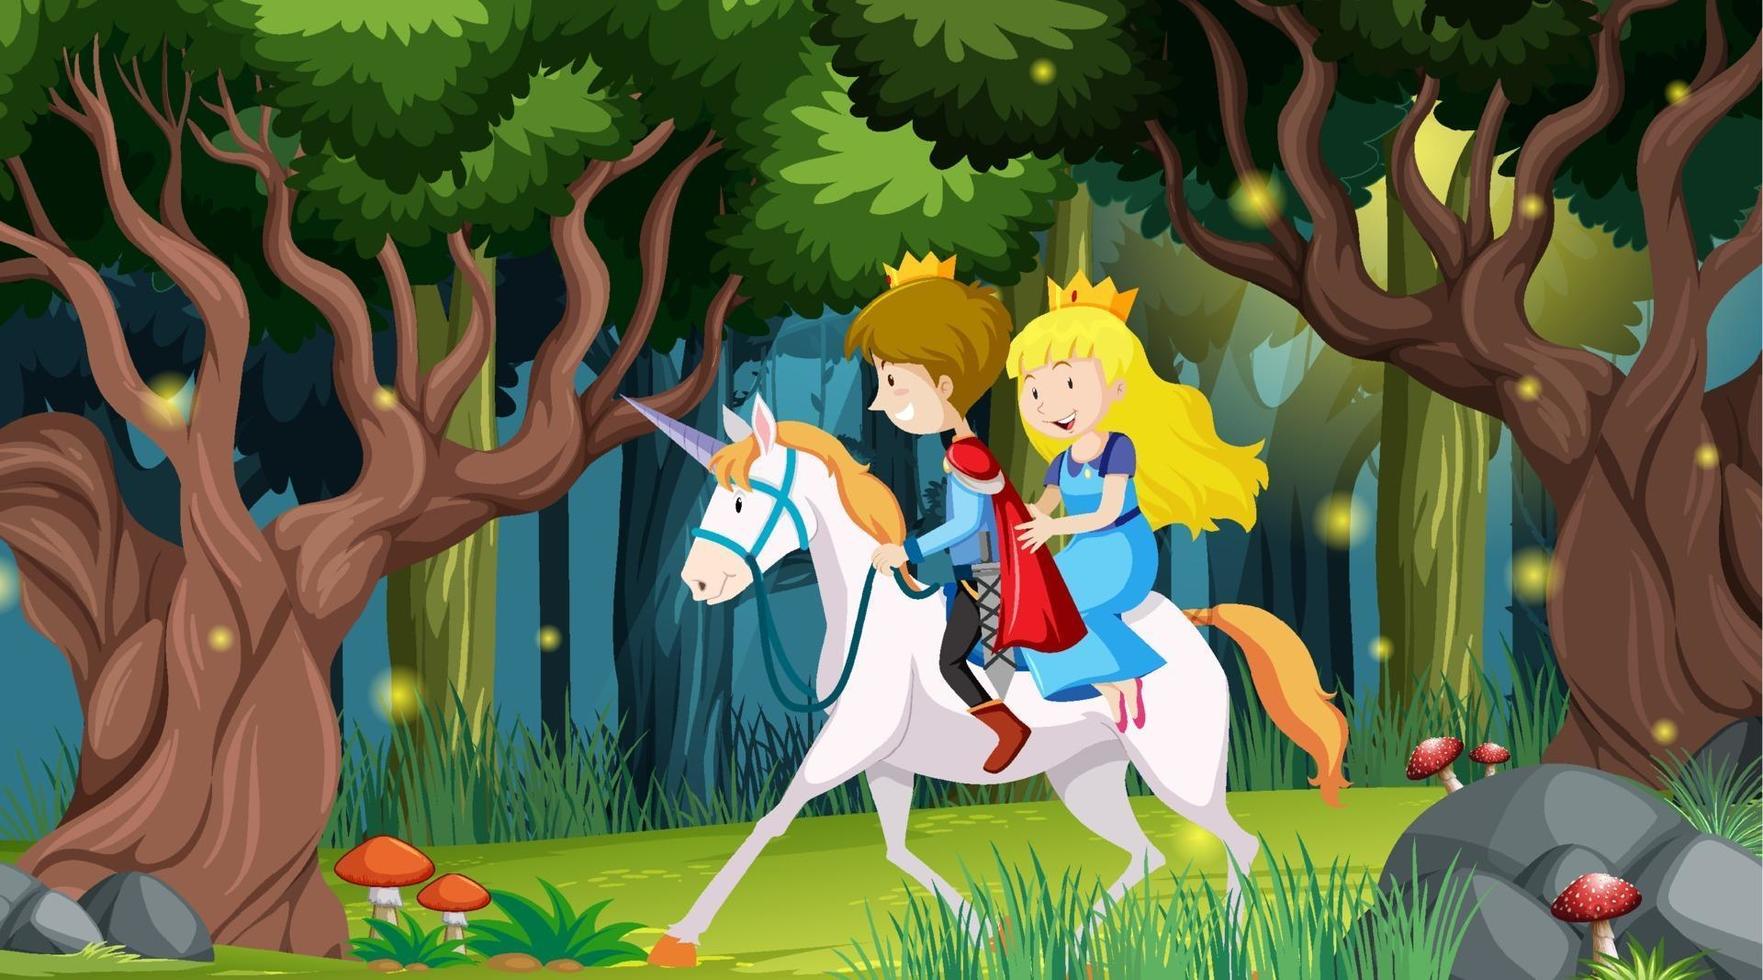 Fantasiewaldszene mit Prinz und Prinzessin vektor